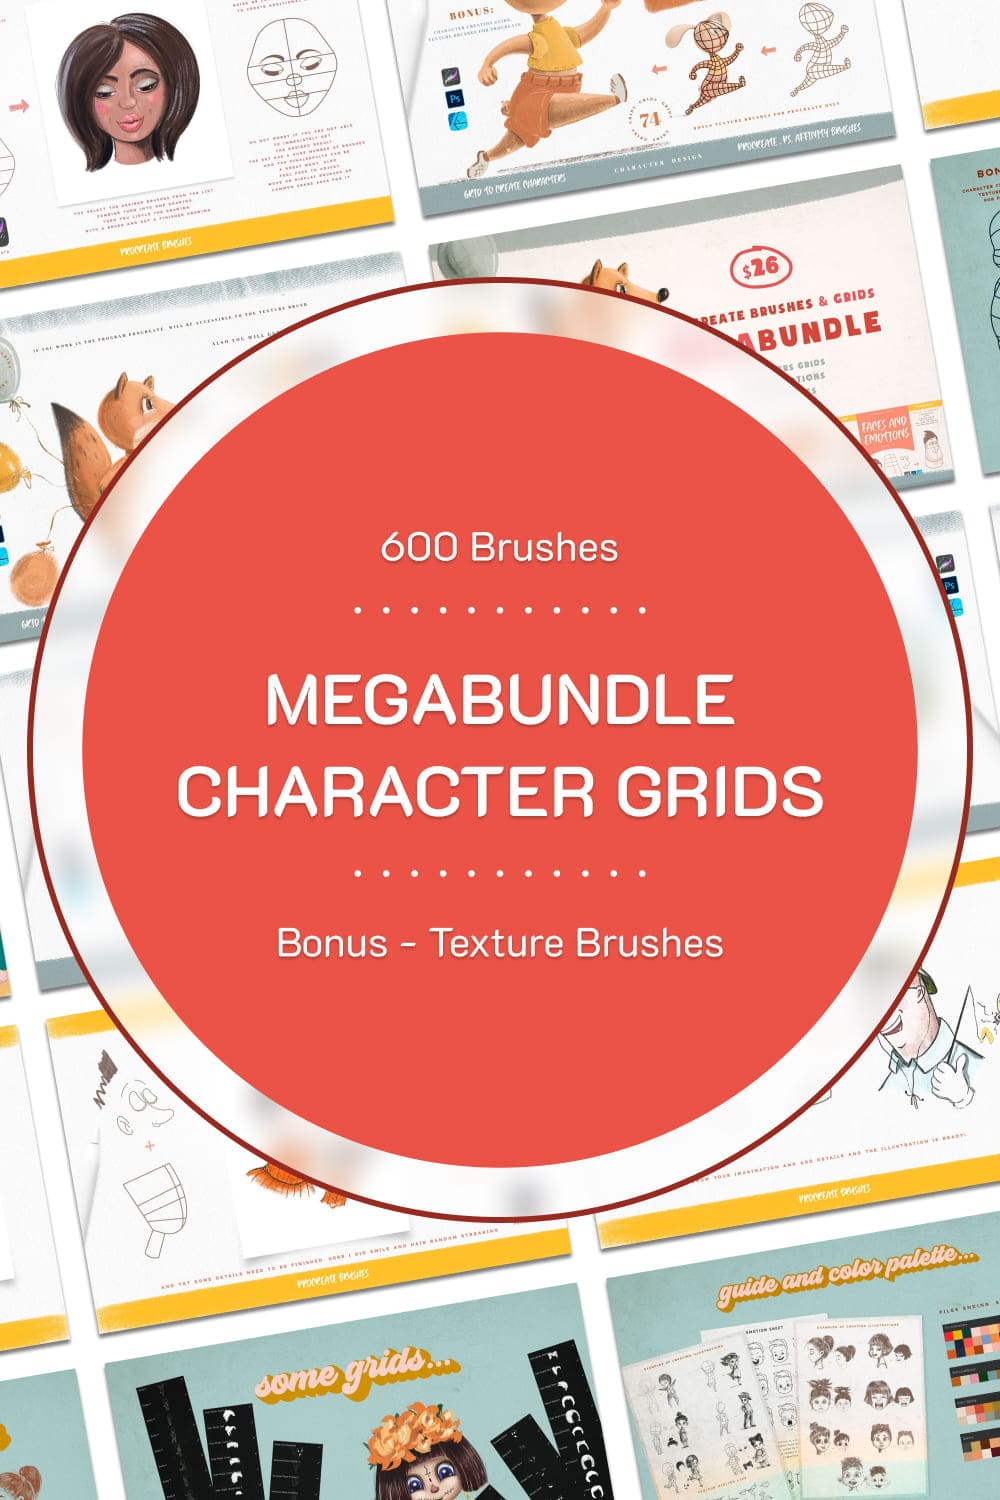 Megabundle character grids, picture for pinterest 1000x1500.